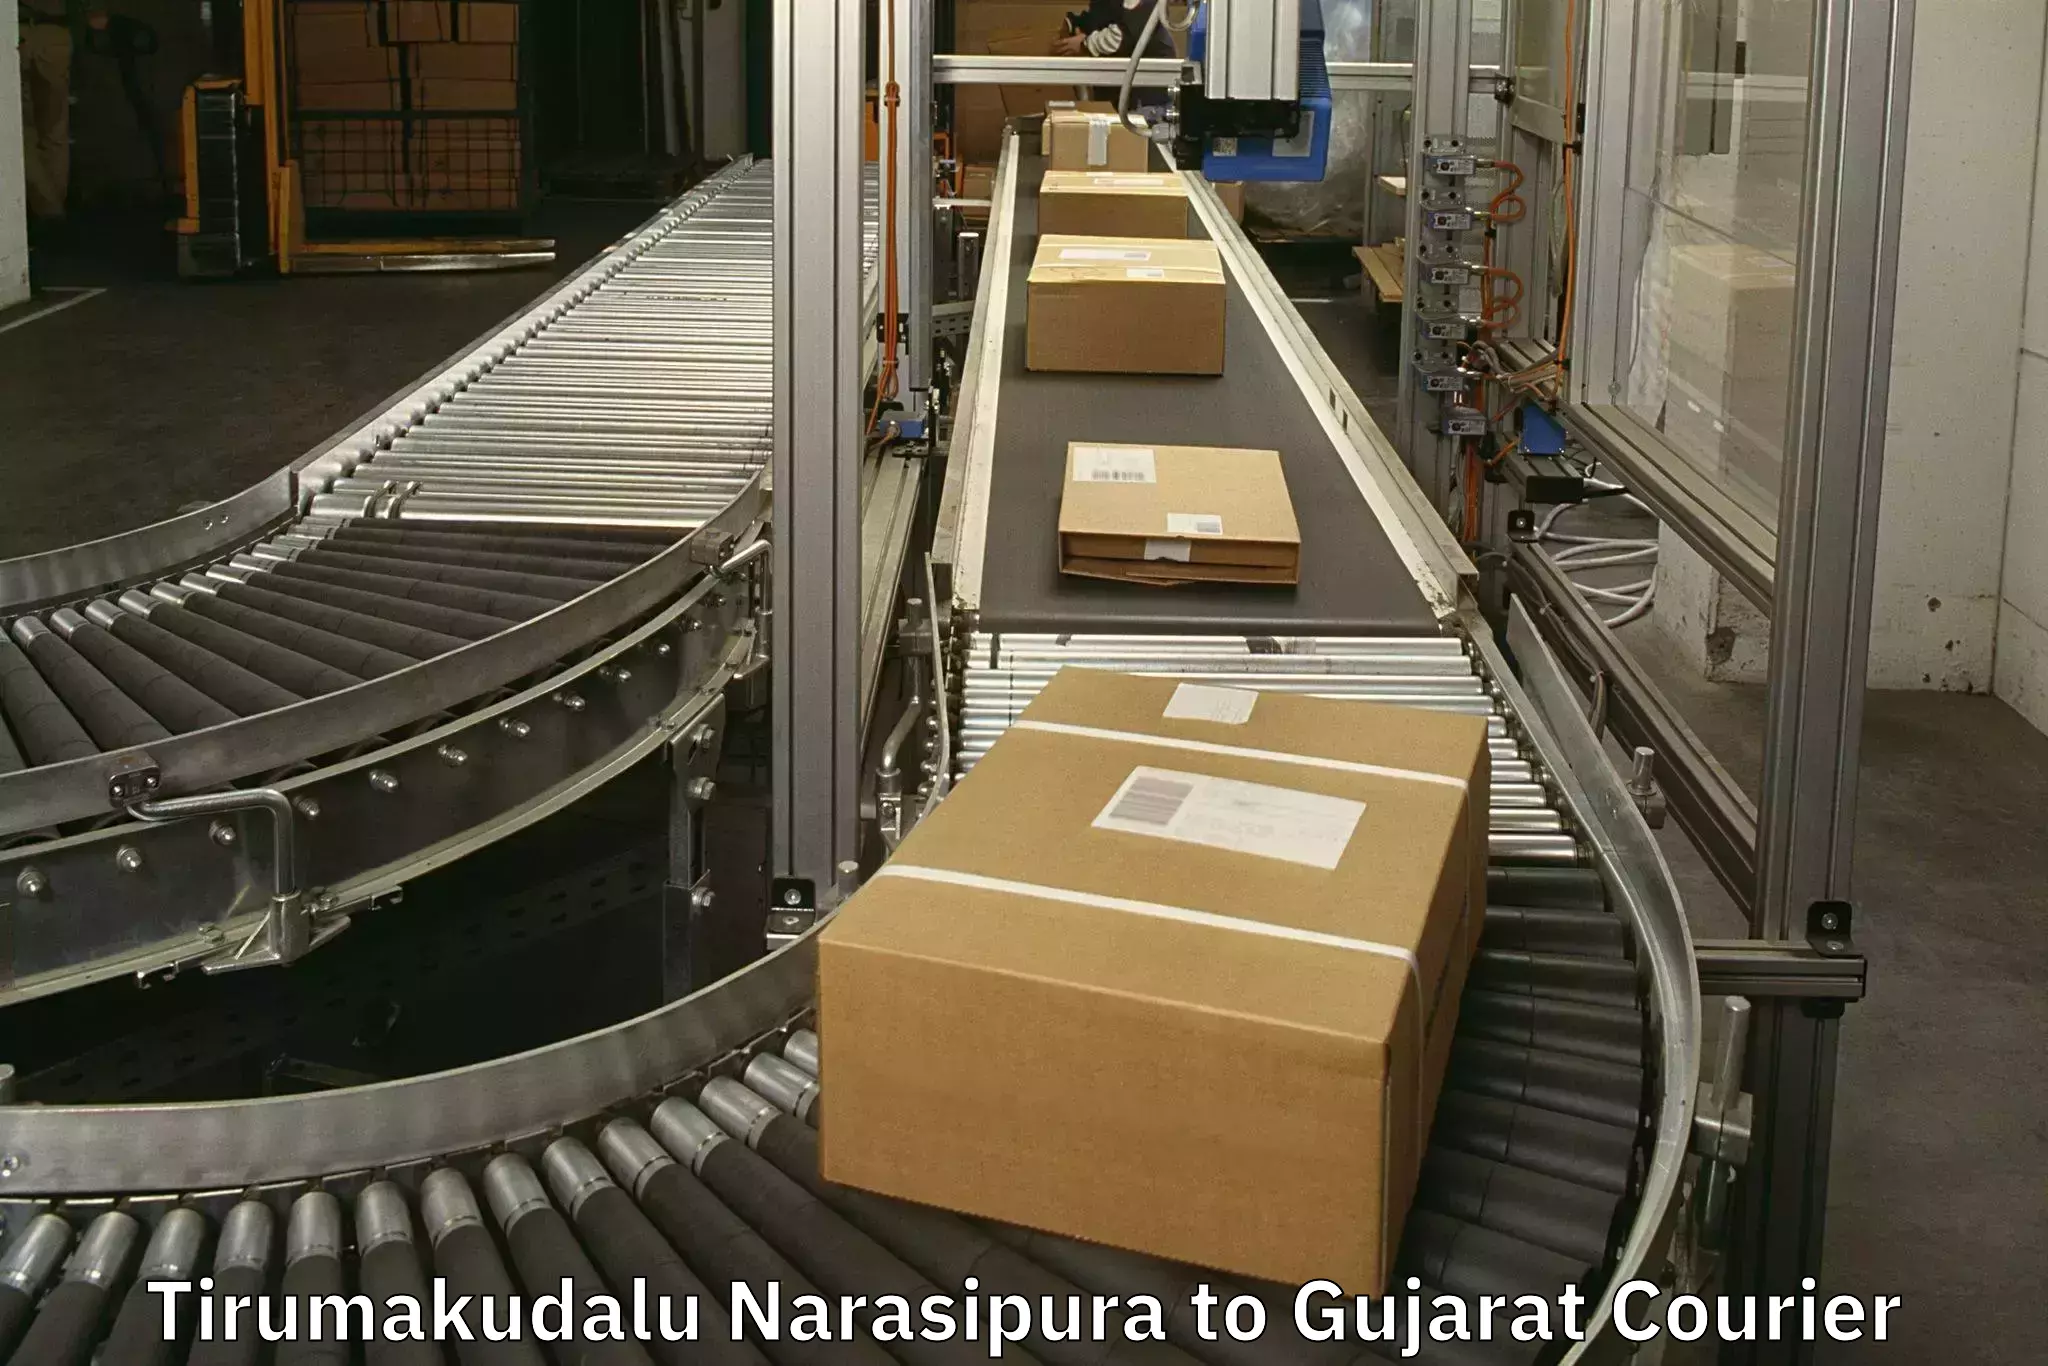 Baggage transport professionals Tirumakudalu Narasipura to Anand